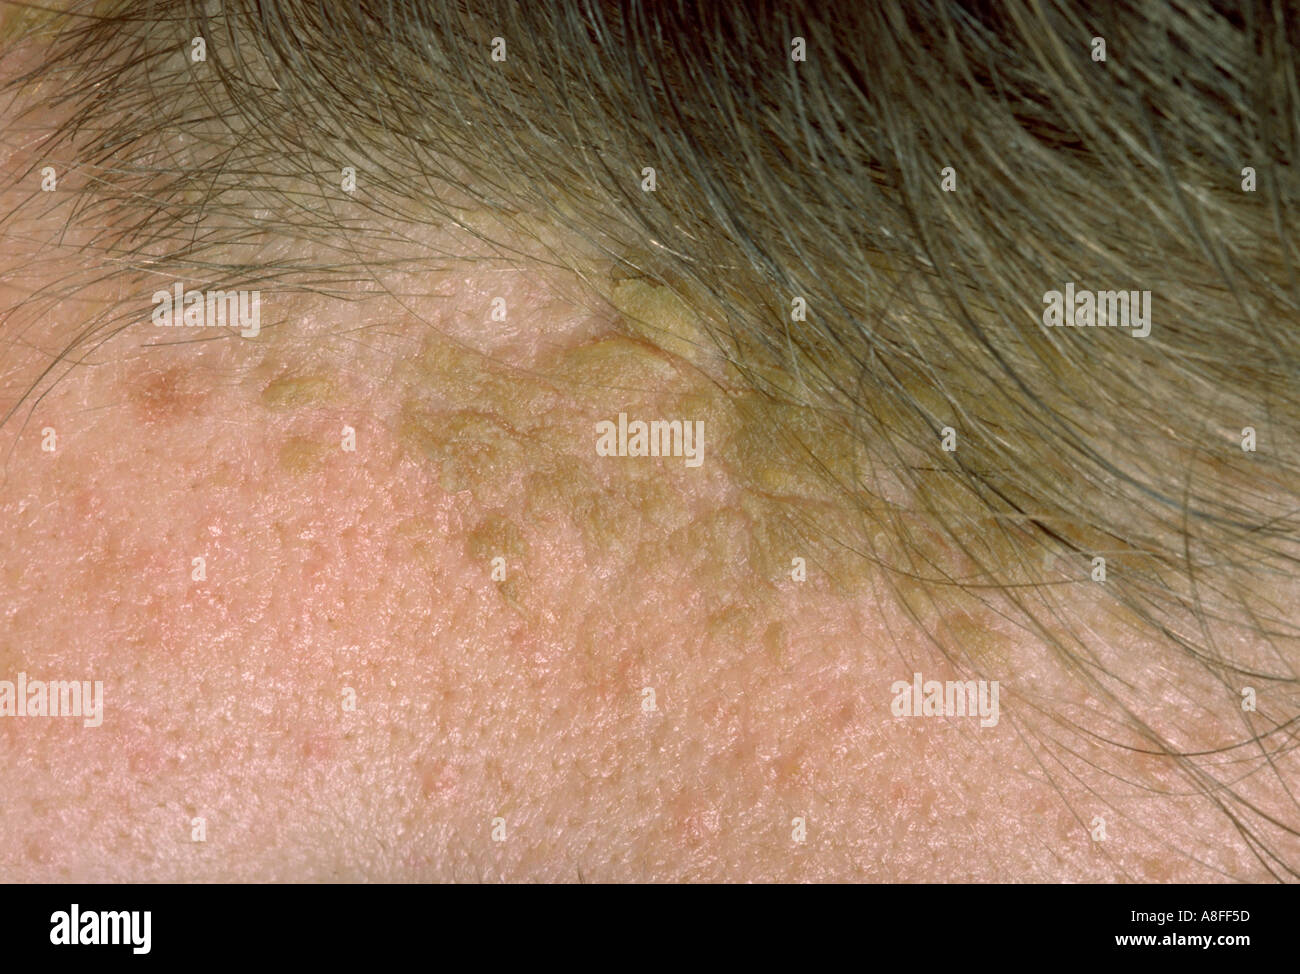 La dermatite seborroica Foto Stock